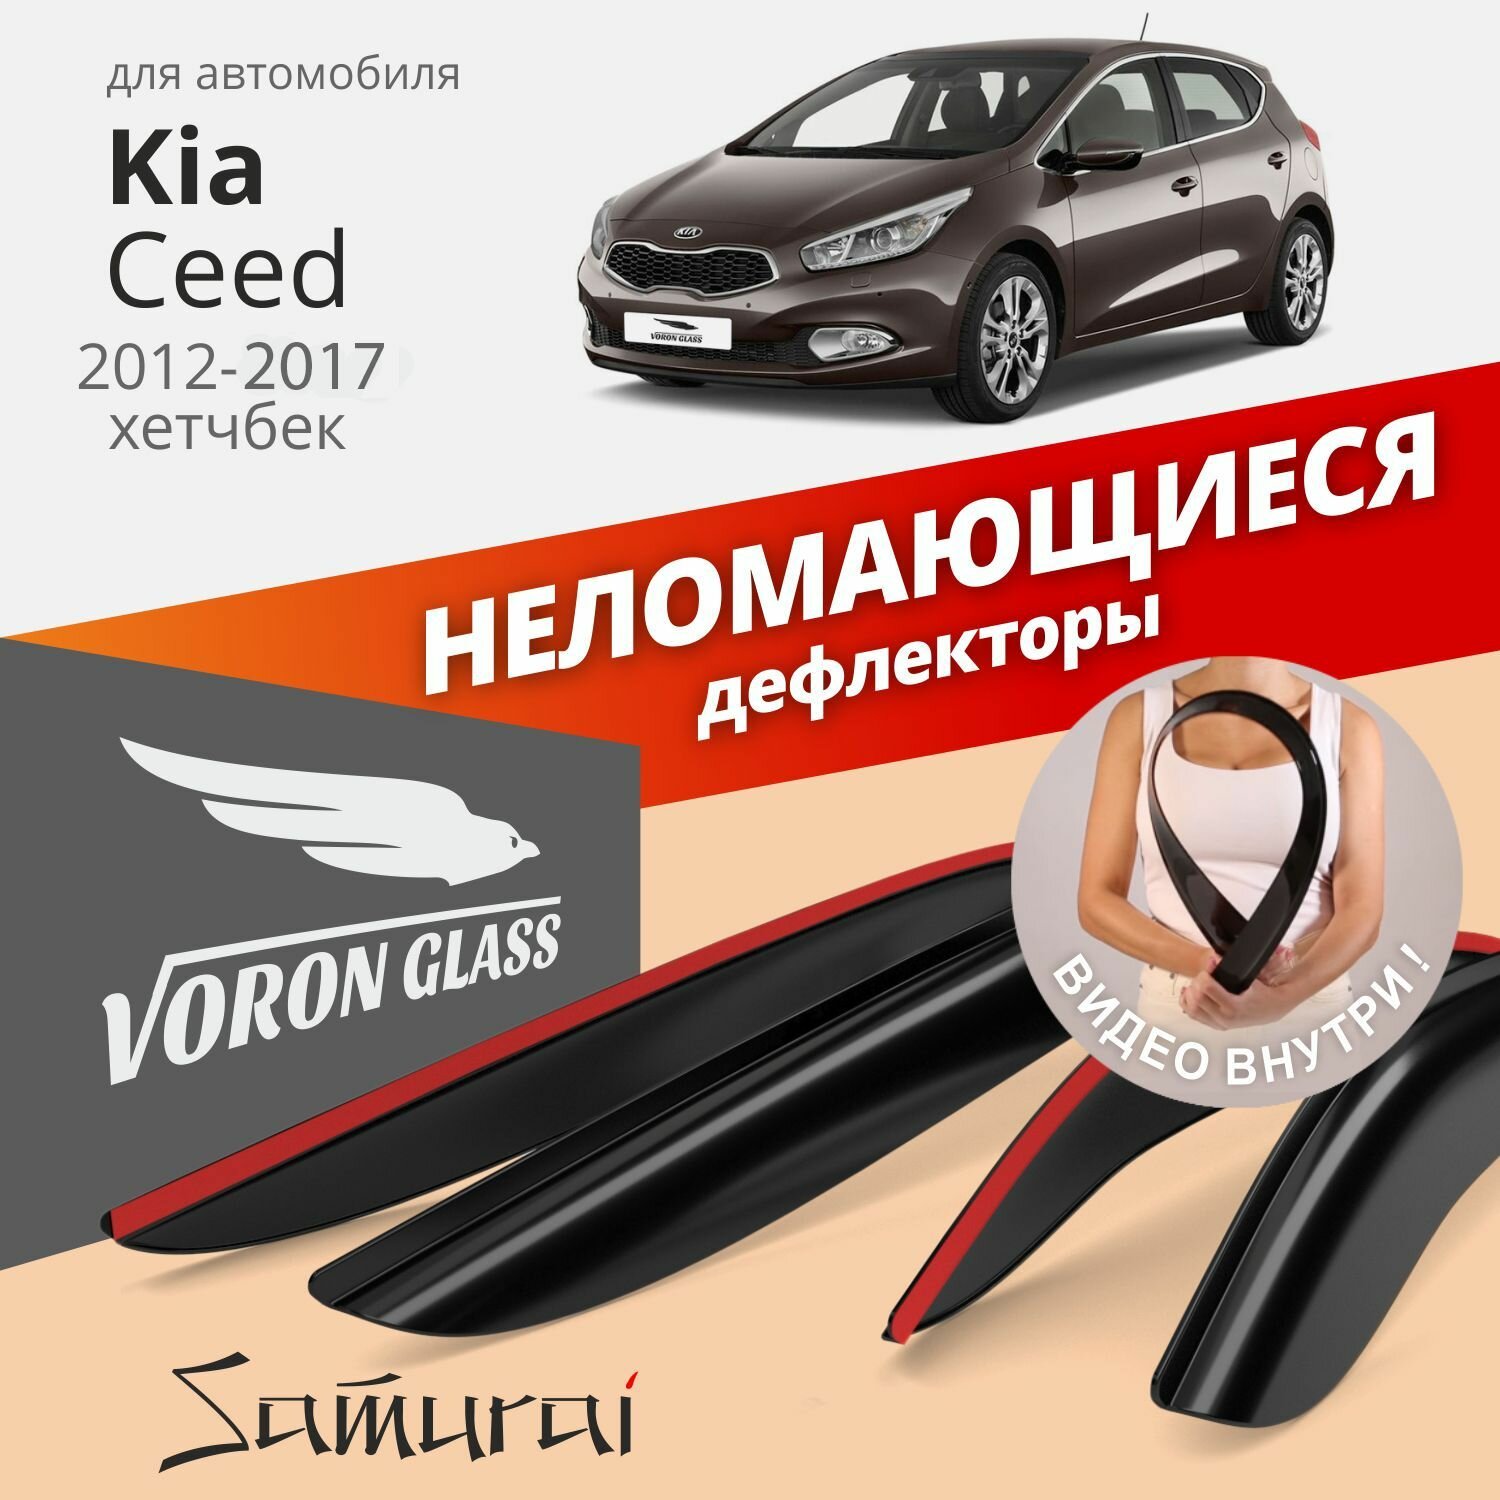 Дефлекторы окон неломающиеся Voron Glass серия Samurai для Kia Ceed II 2012-2018 хэтчбек накладные 4 шт.